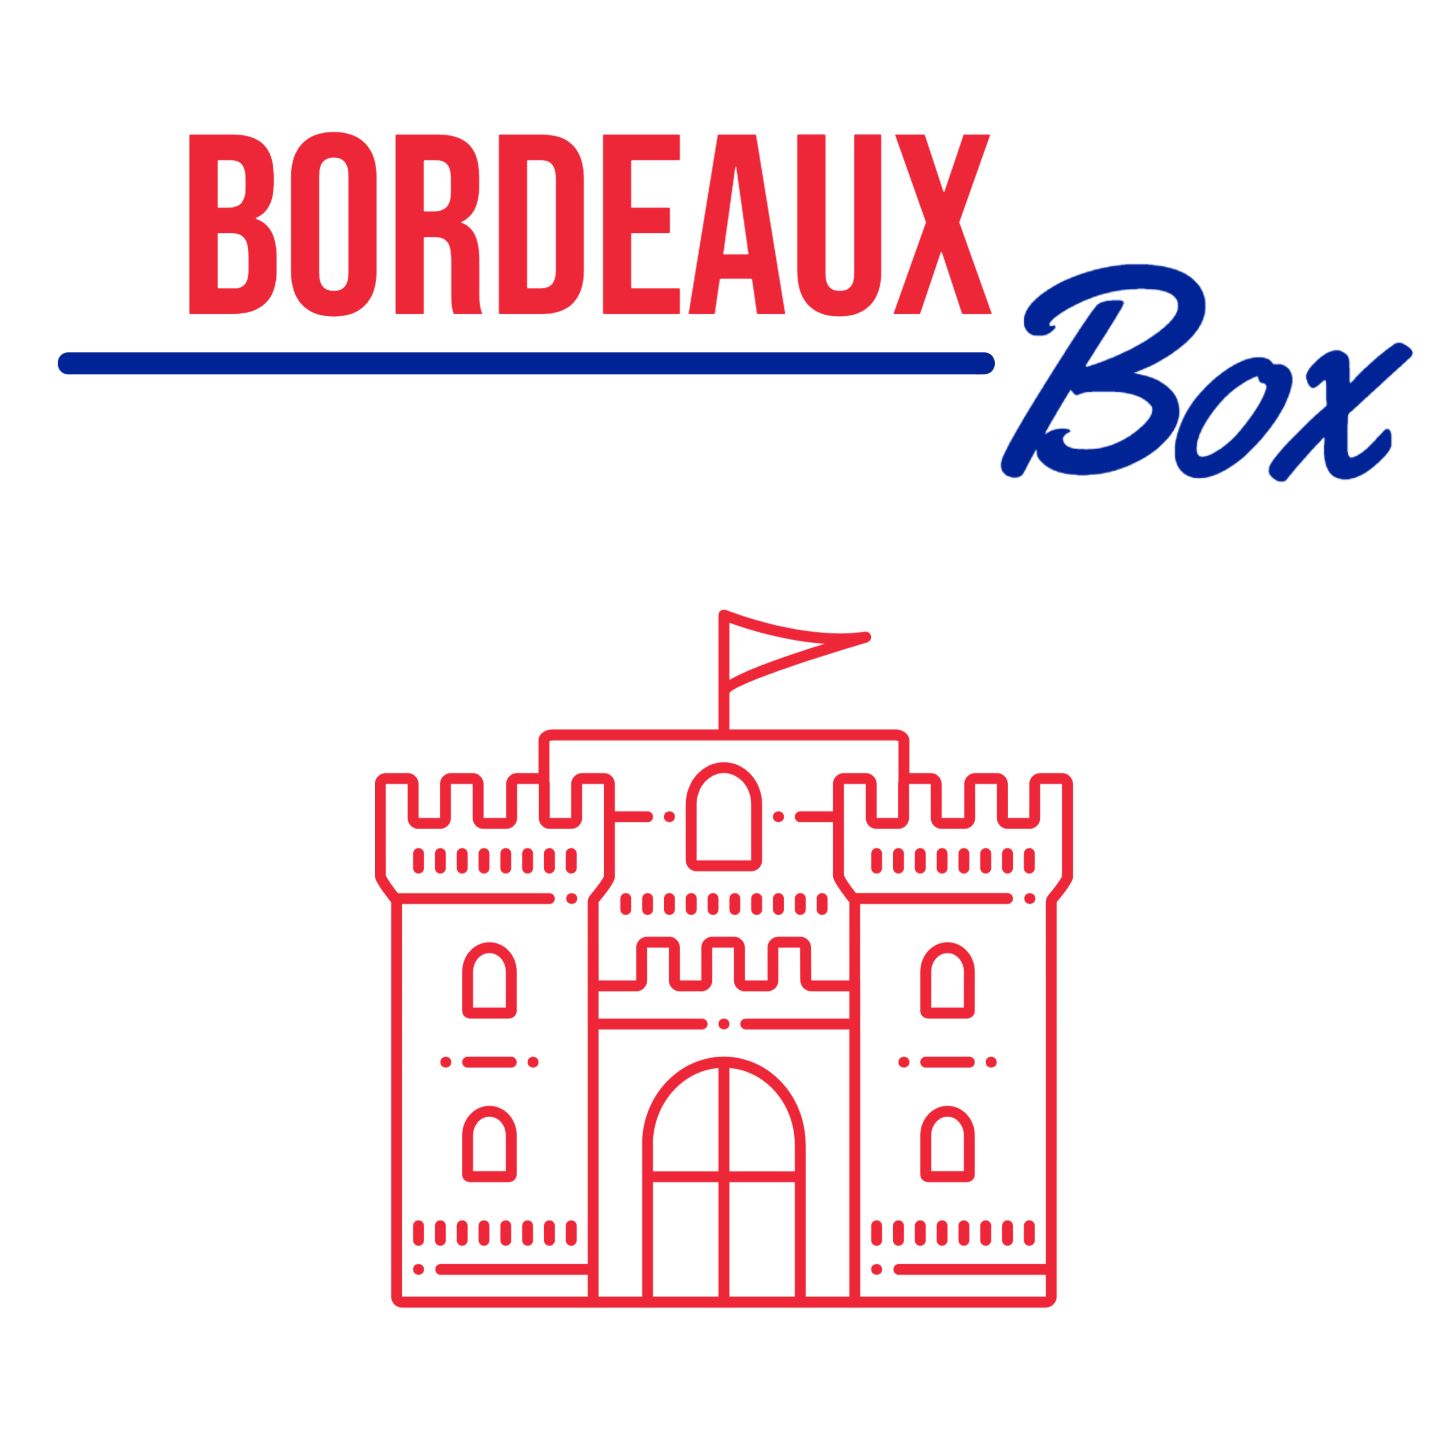 Bordeaux Box